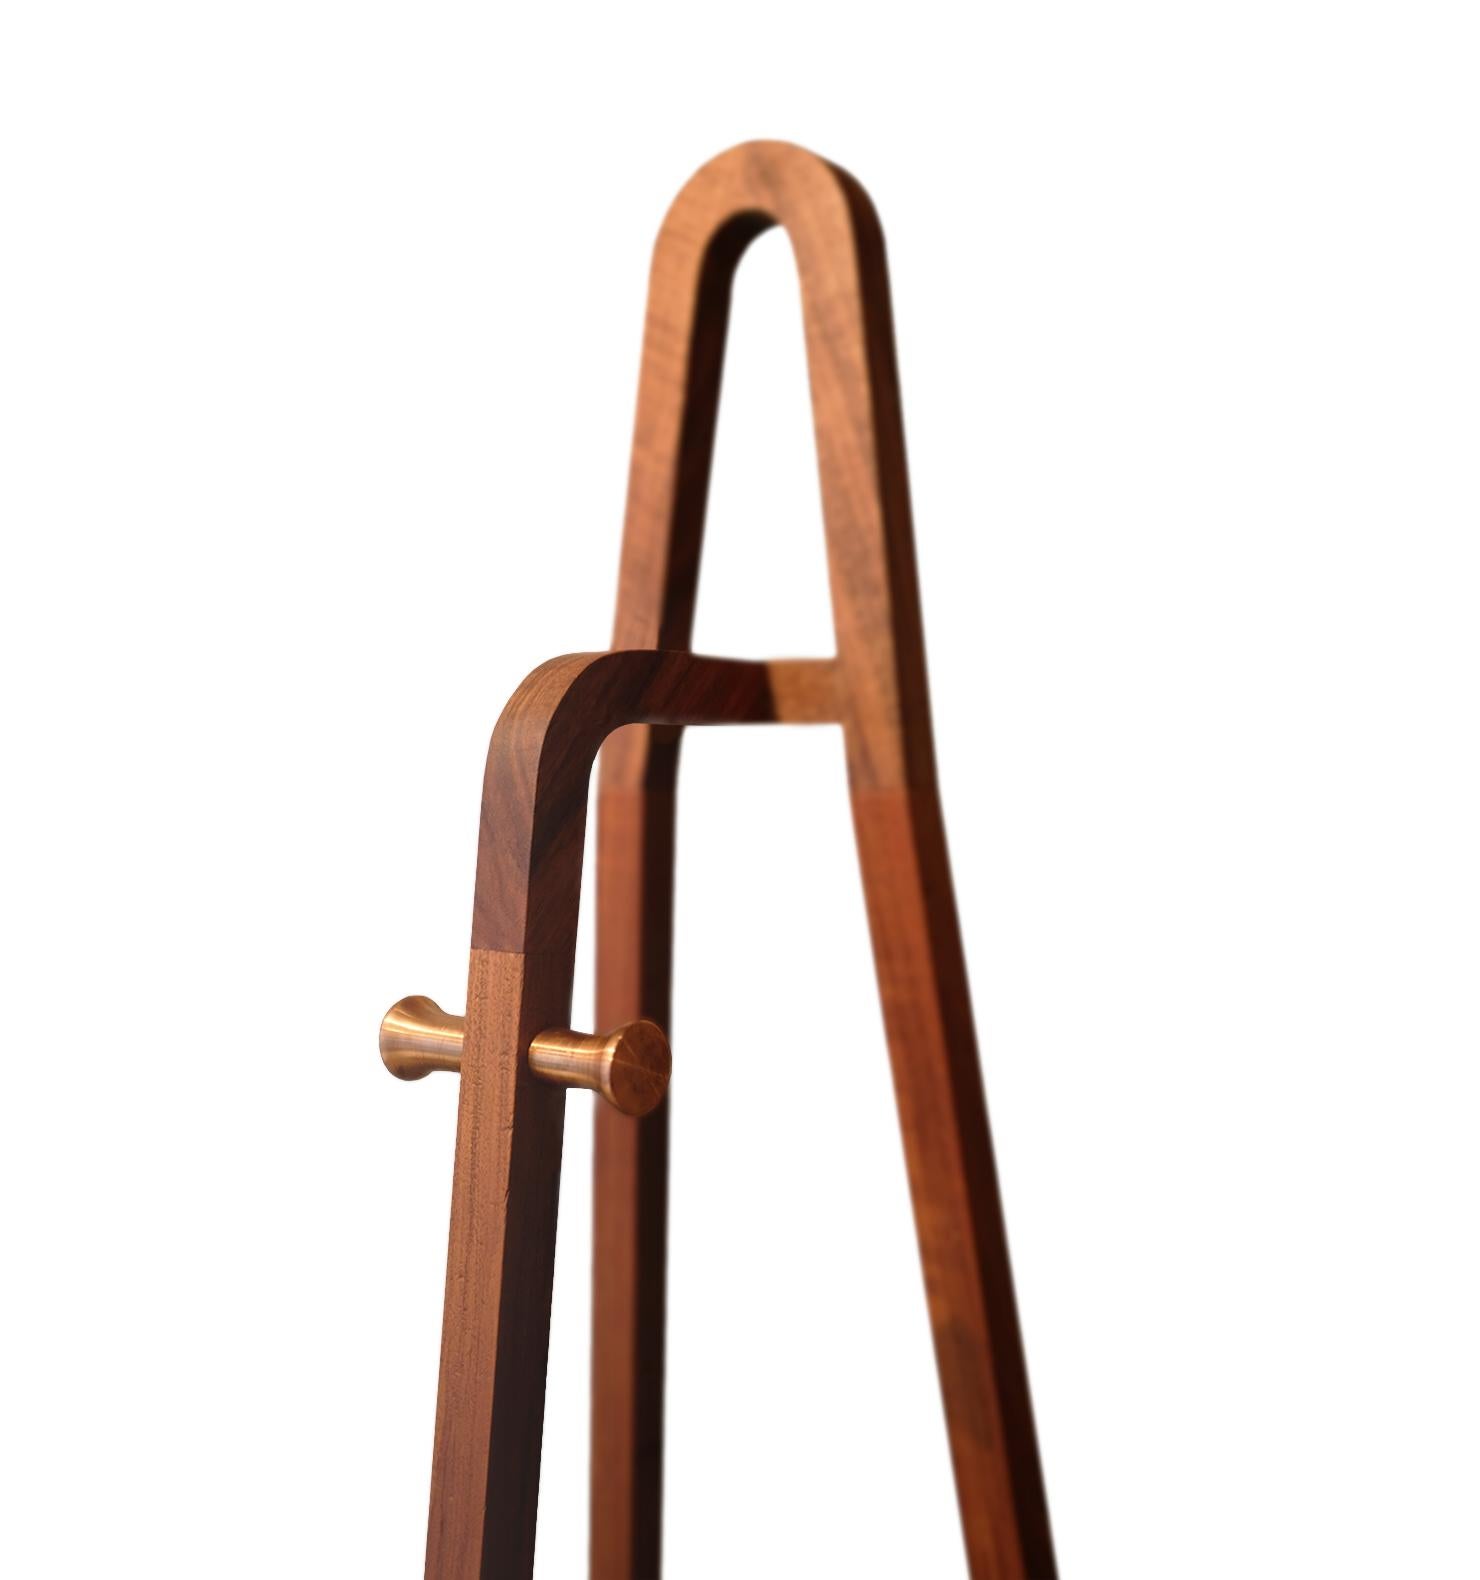 Le porte-manteau Tono G est un ajout remarquable à la ligne Tono, fabriqué en bois massif et présentant les courbes emblématiques qui définissent la collection. Ce porte-manteau est conçu pour s'intégrer parfaitement dans n'importe quel espace,